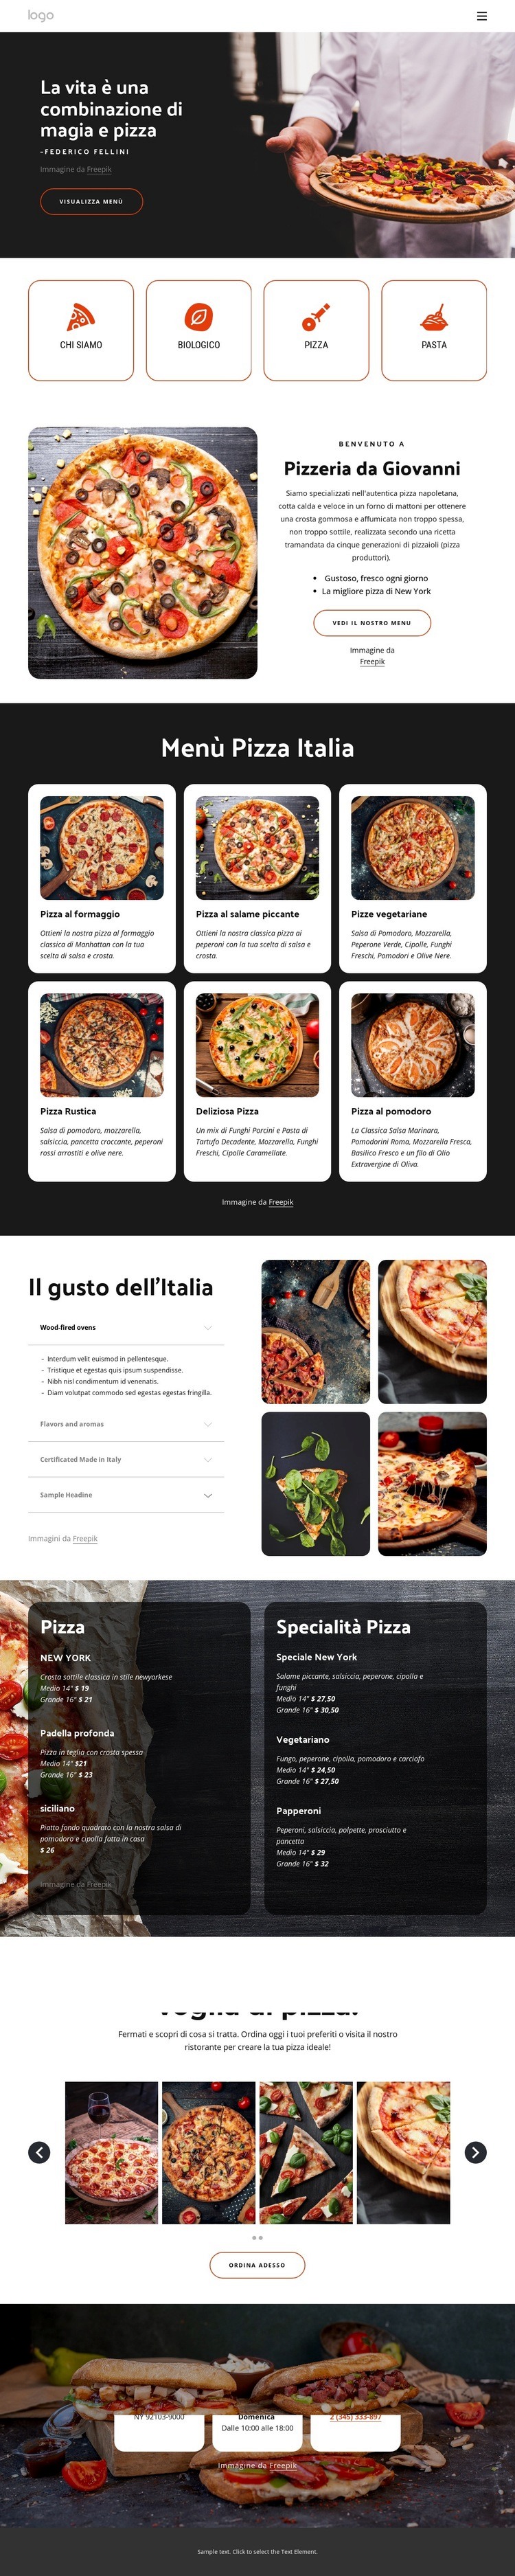 Ristorante pizzeria per famiglie Mockup del sito web